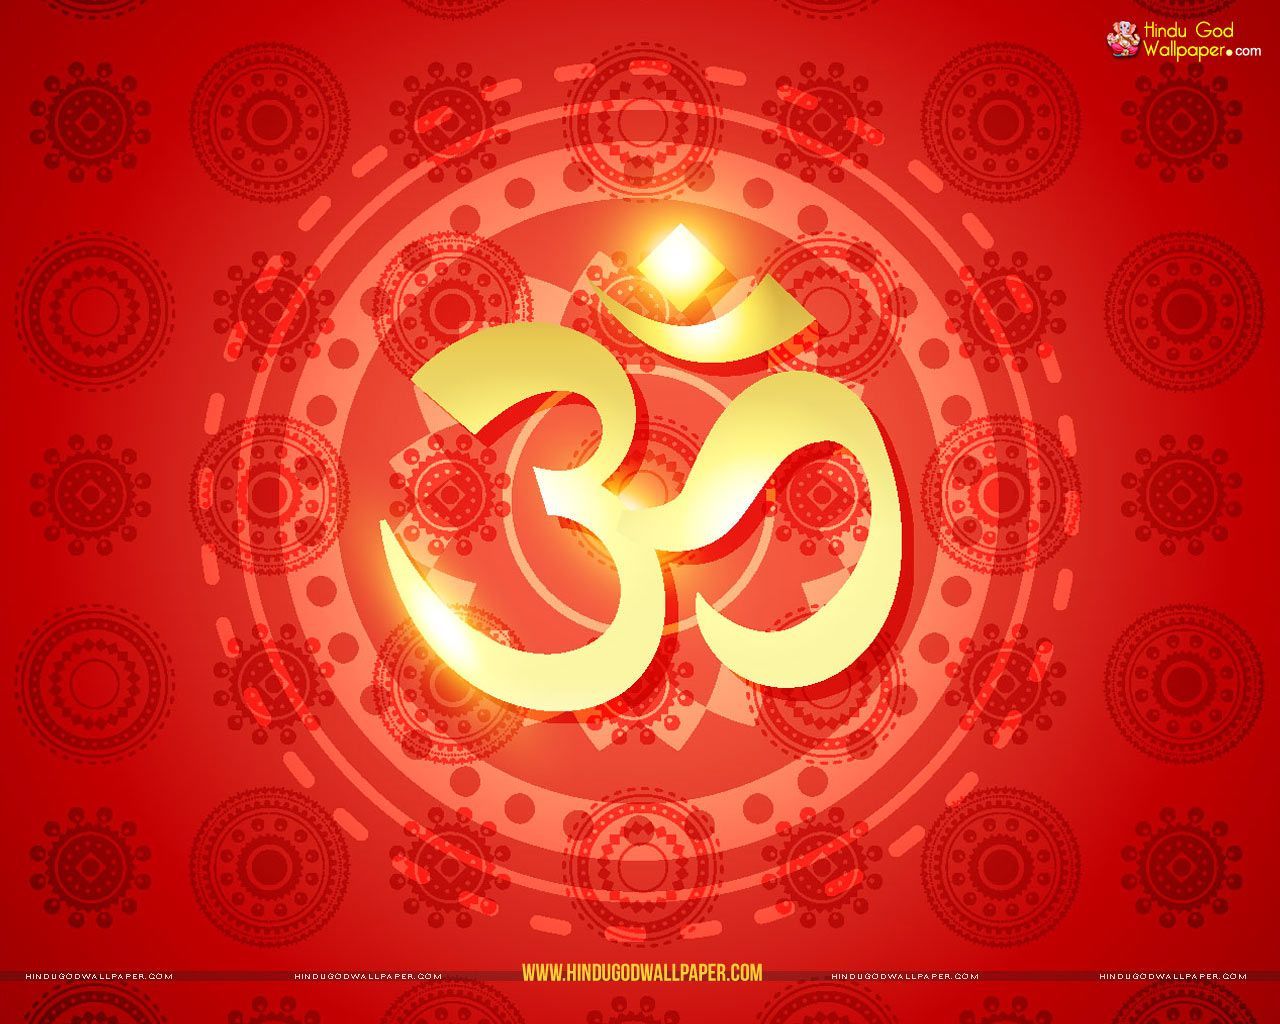 Om Wallpaper High Resolution for Desktop. Om symbol wallpaper, Mandala background, Hindu symbols